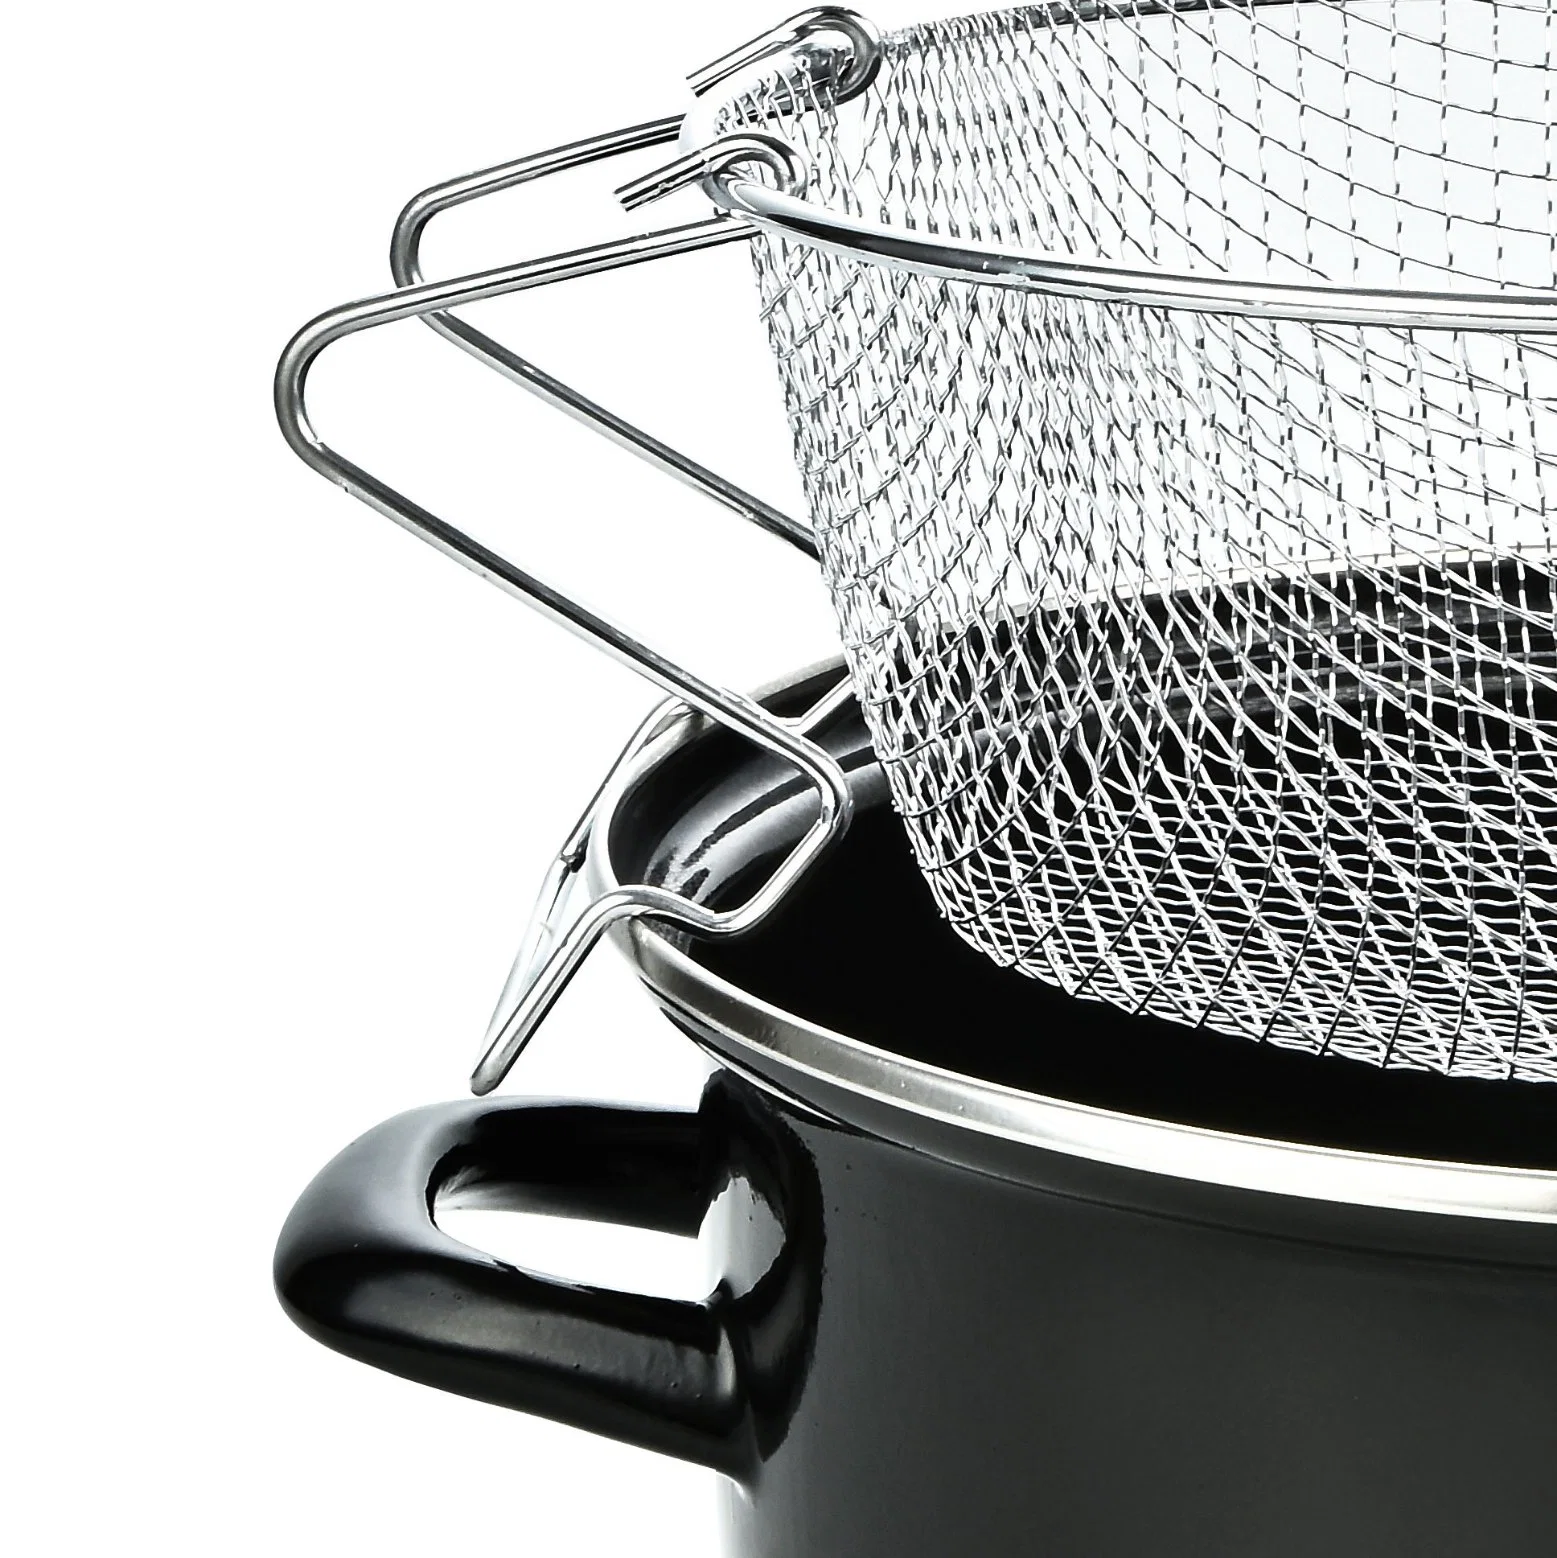 Classic Kitchenware Stainless Steel Basket Enamel Steel Fryer Pot Casserol Set Casserol Deep Fryer Gas for Sale Deep Fryer Basket